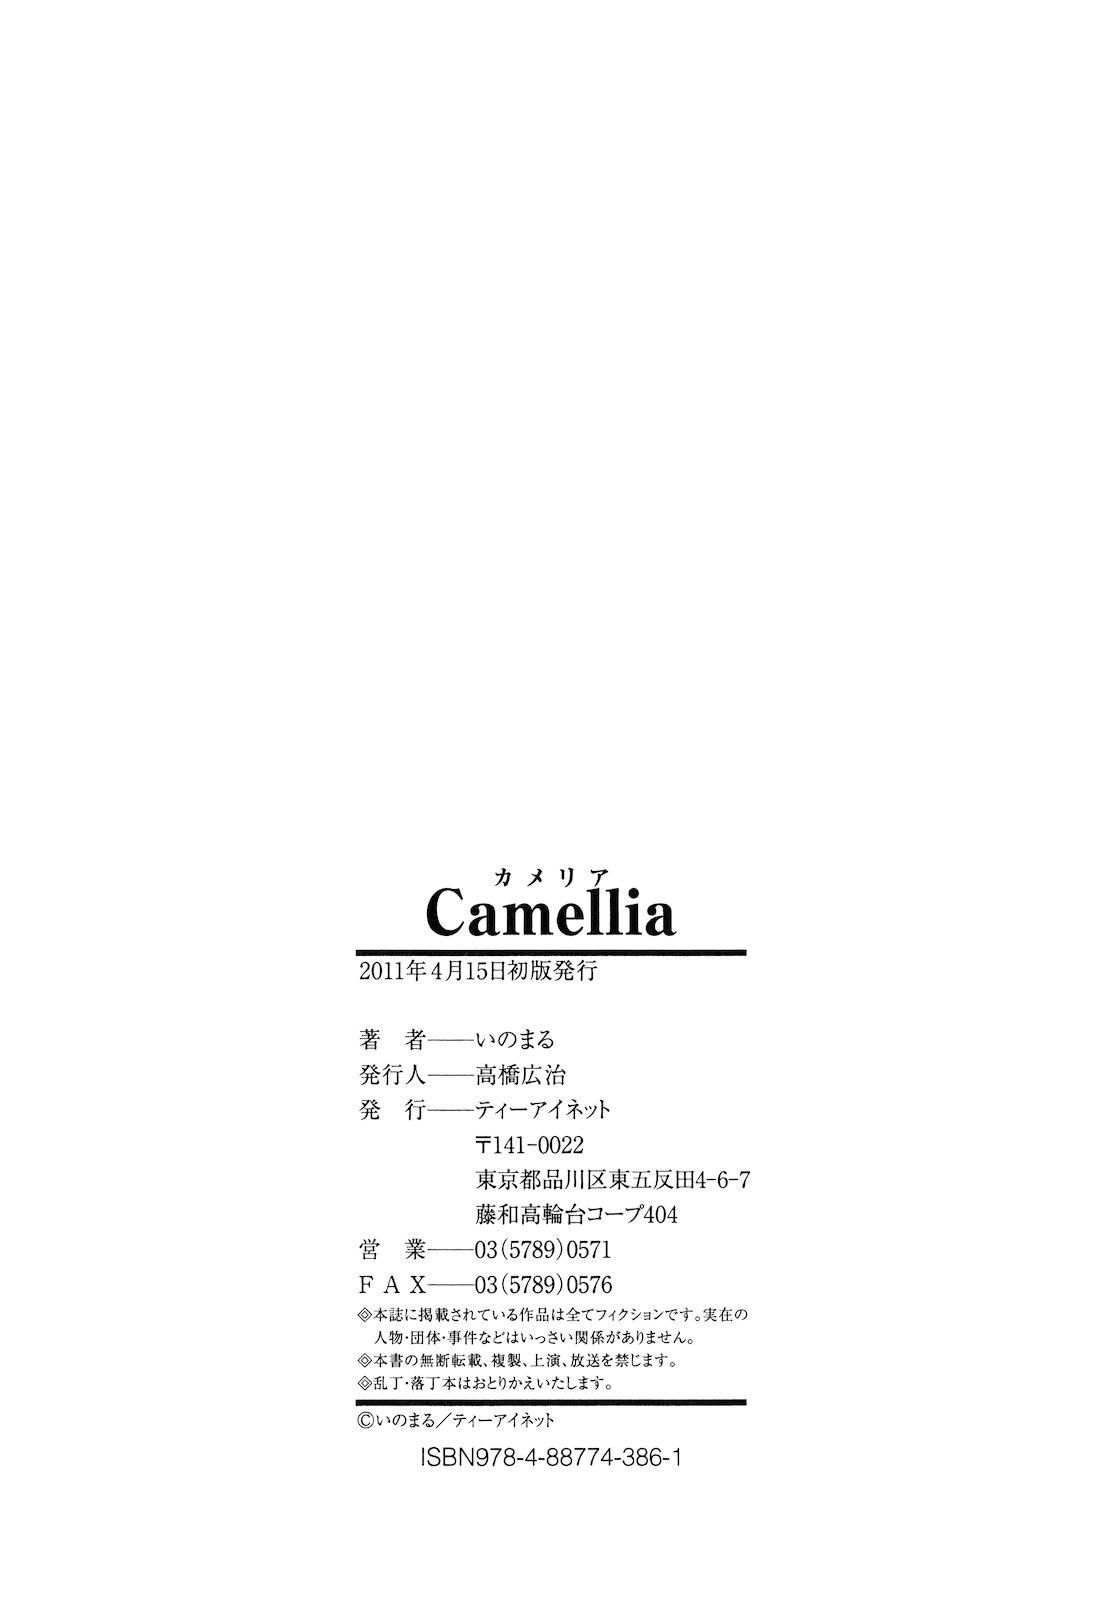 Camellia 221